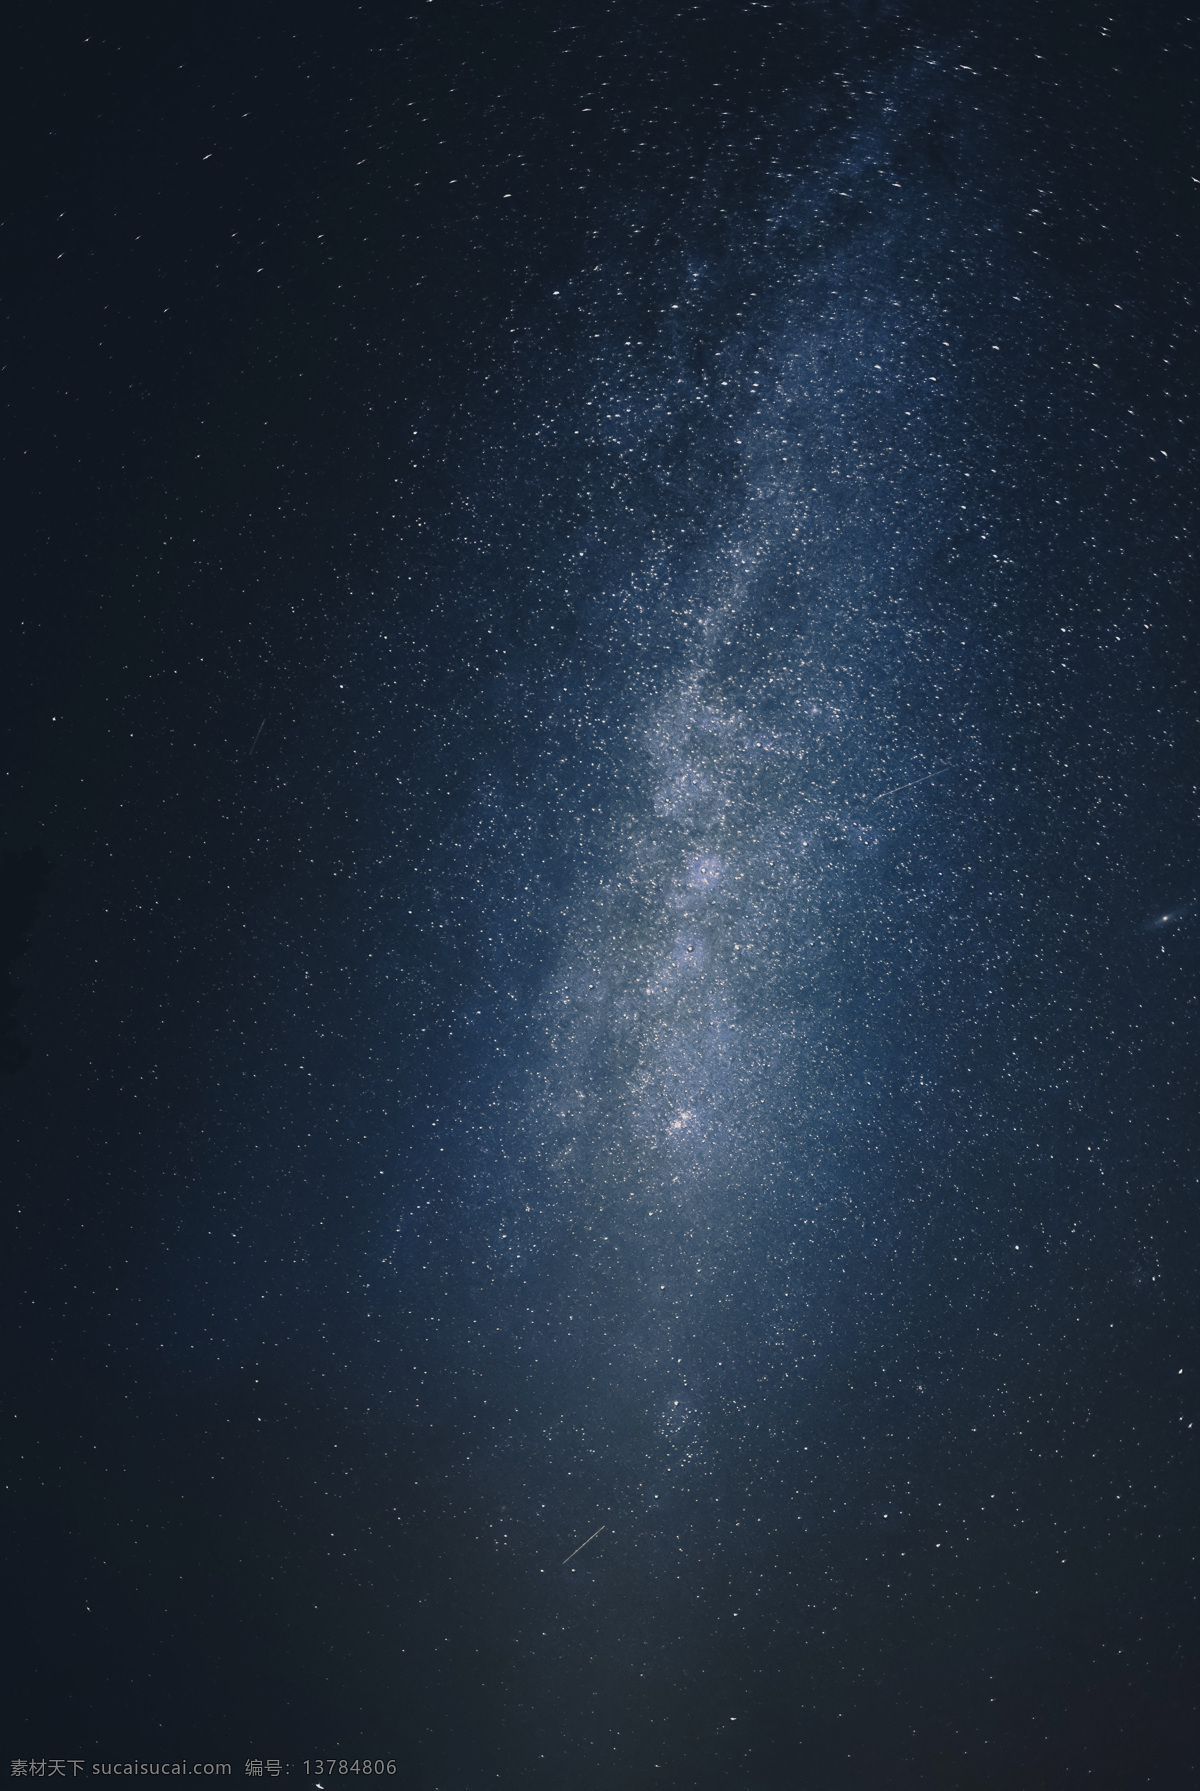 黑夜 深空 银河系 星空 浩瀚 银河 宇宙 星星 壁纸 唯美 夜晚 星河 繁星 太空 手机屏保 黑色 自然景观 自然风光